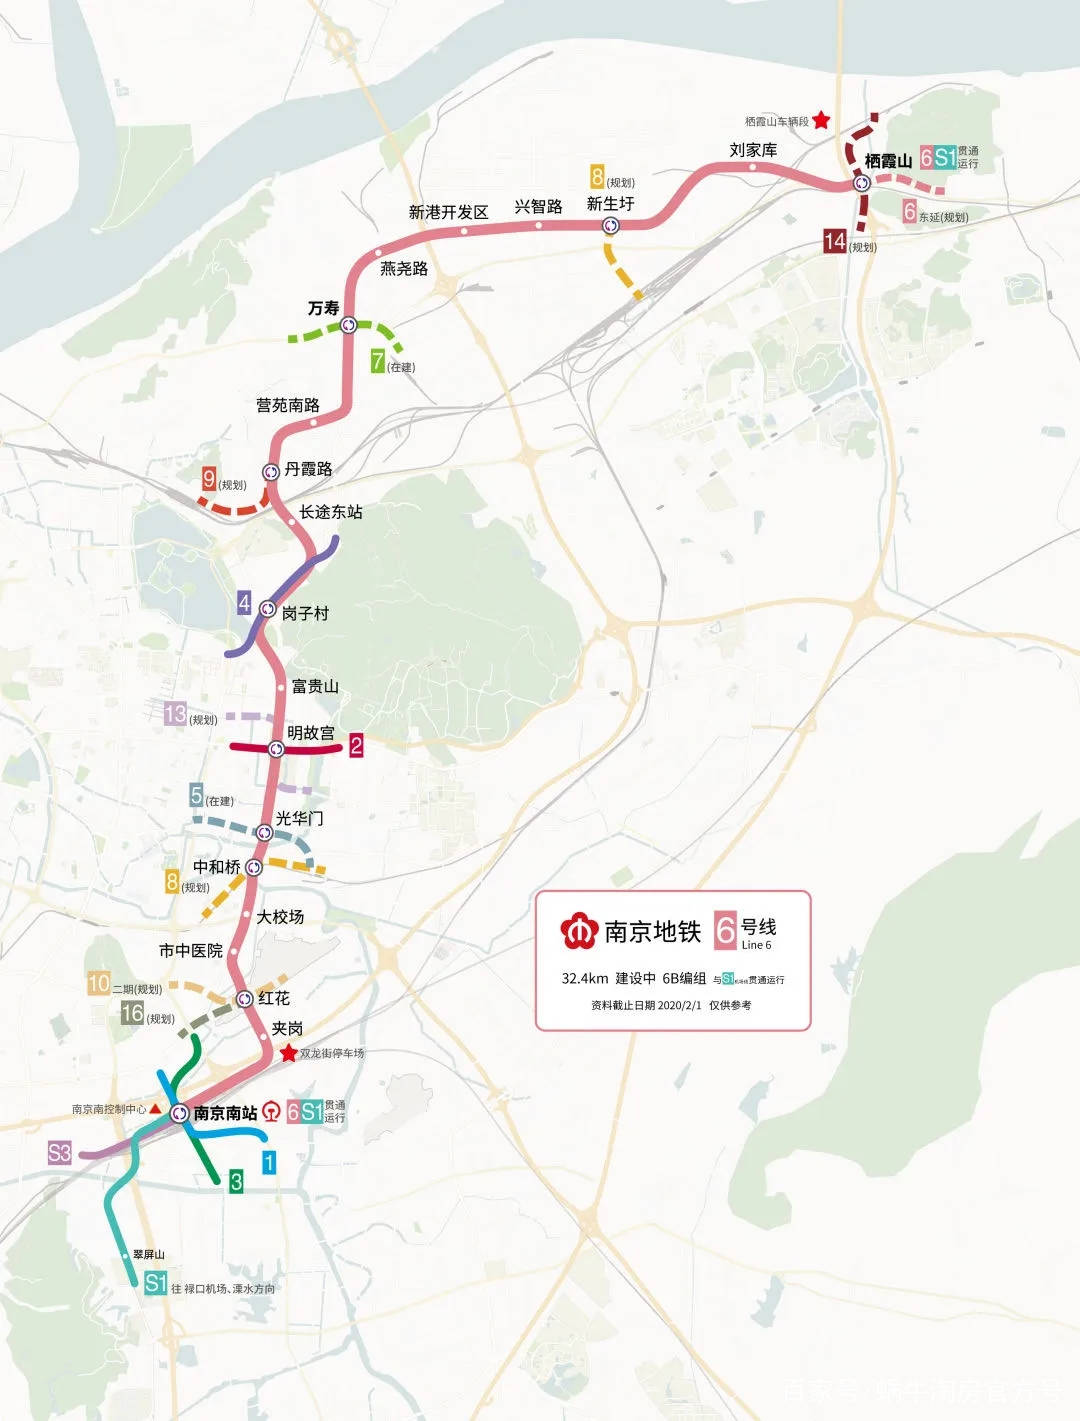 南京地铁6号线最新进展曝光,沿线一批楼盘受益!